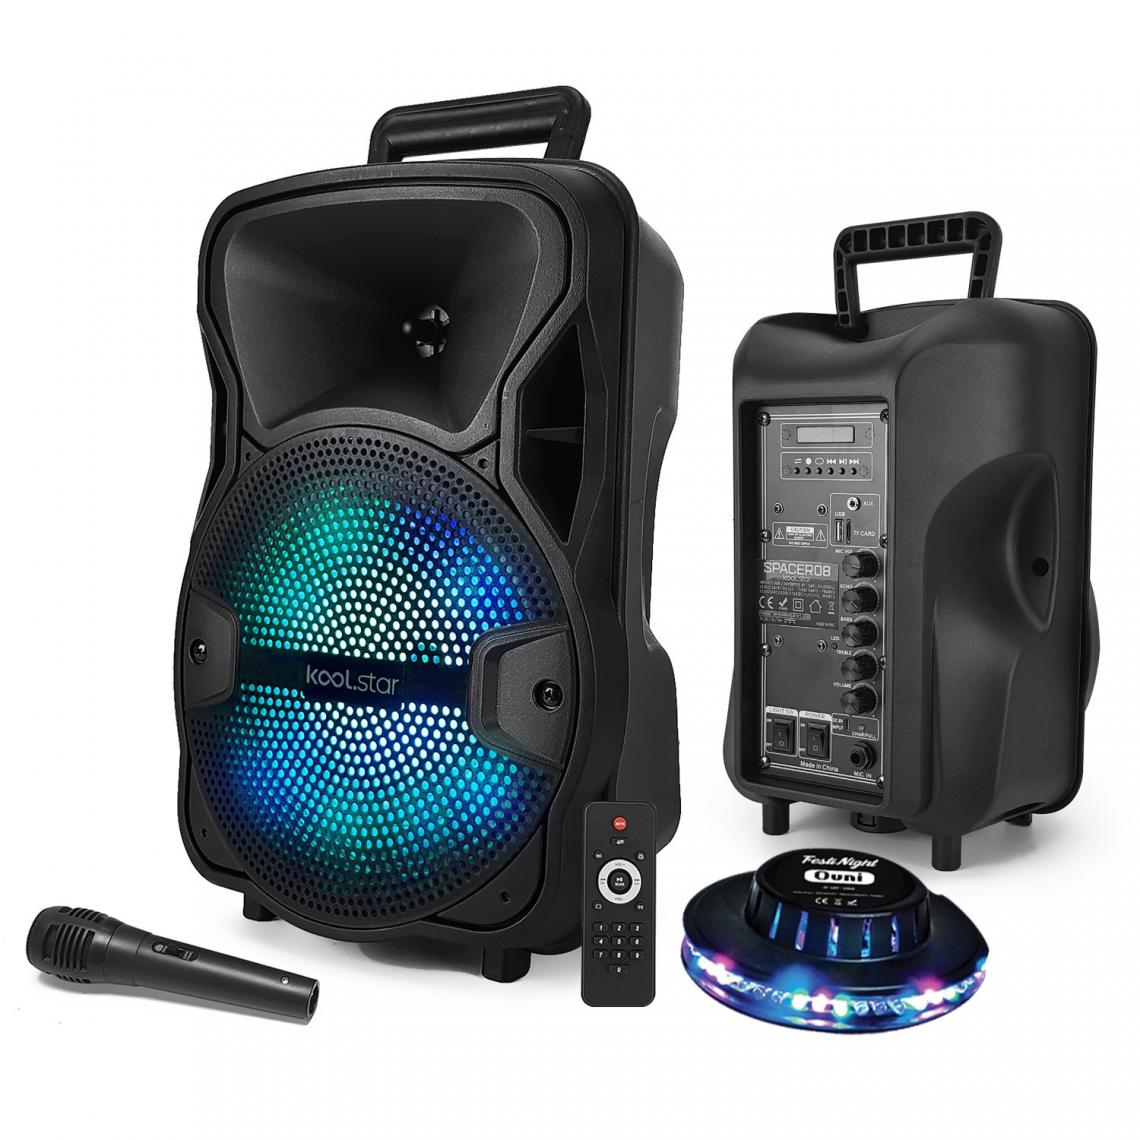 Koolstar - Enceinte Active KOOLSTAR SPACER08 - SONO DJ KoolStar Karaoke autonome Mobile Batterie 8" - 200W - USB/Bluetooth + Micro + OVNI - Packs sonorisation